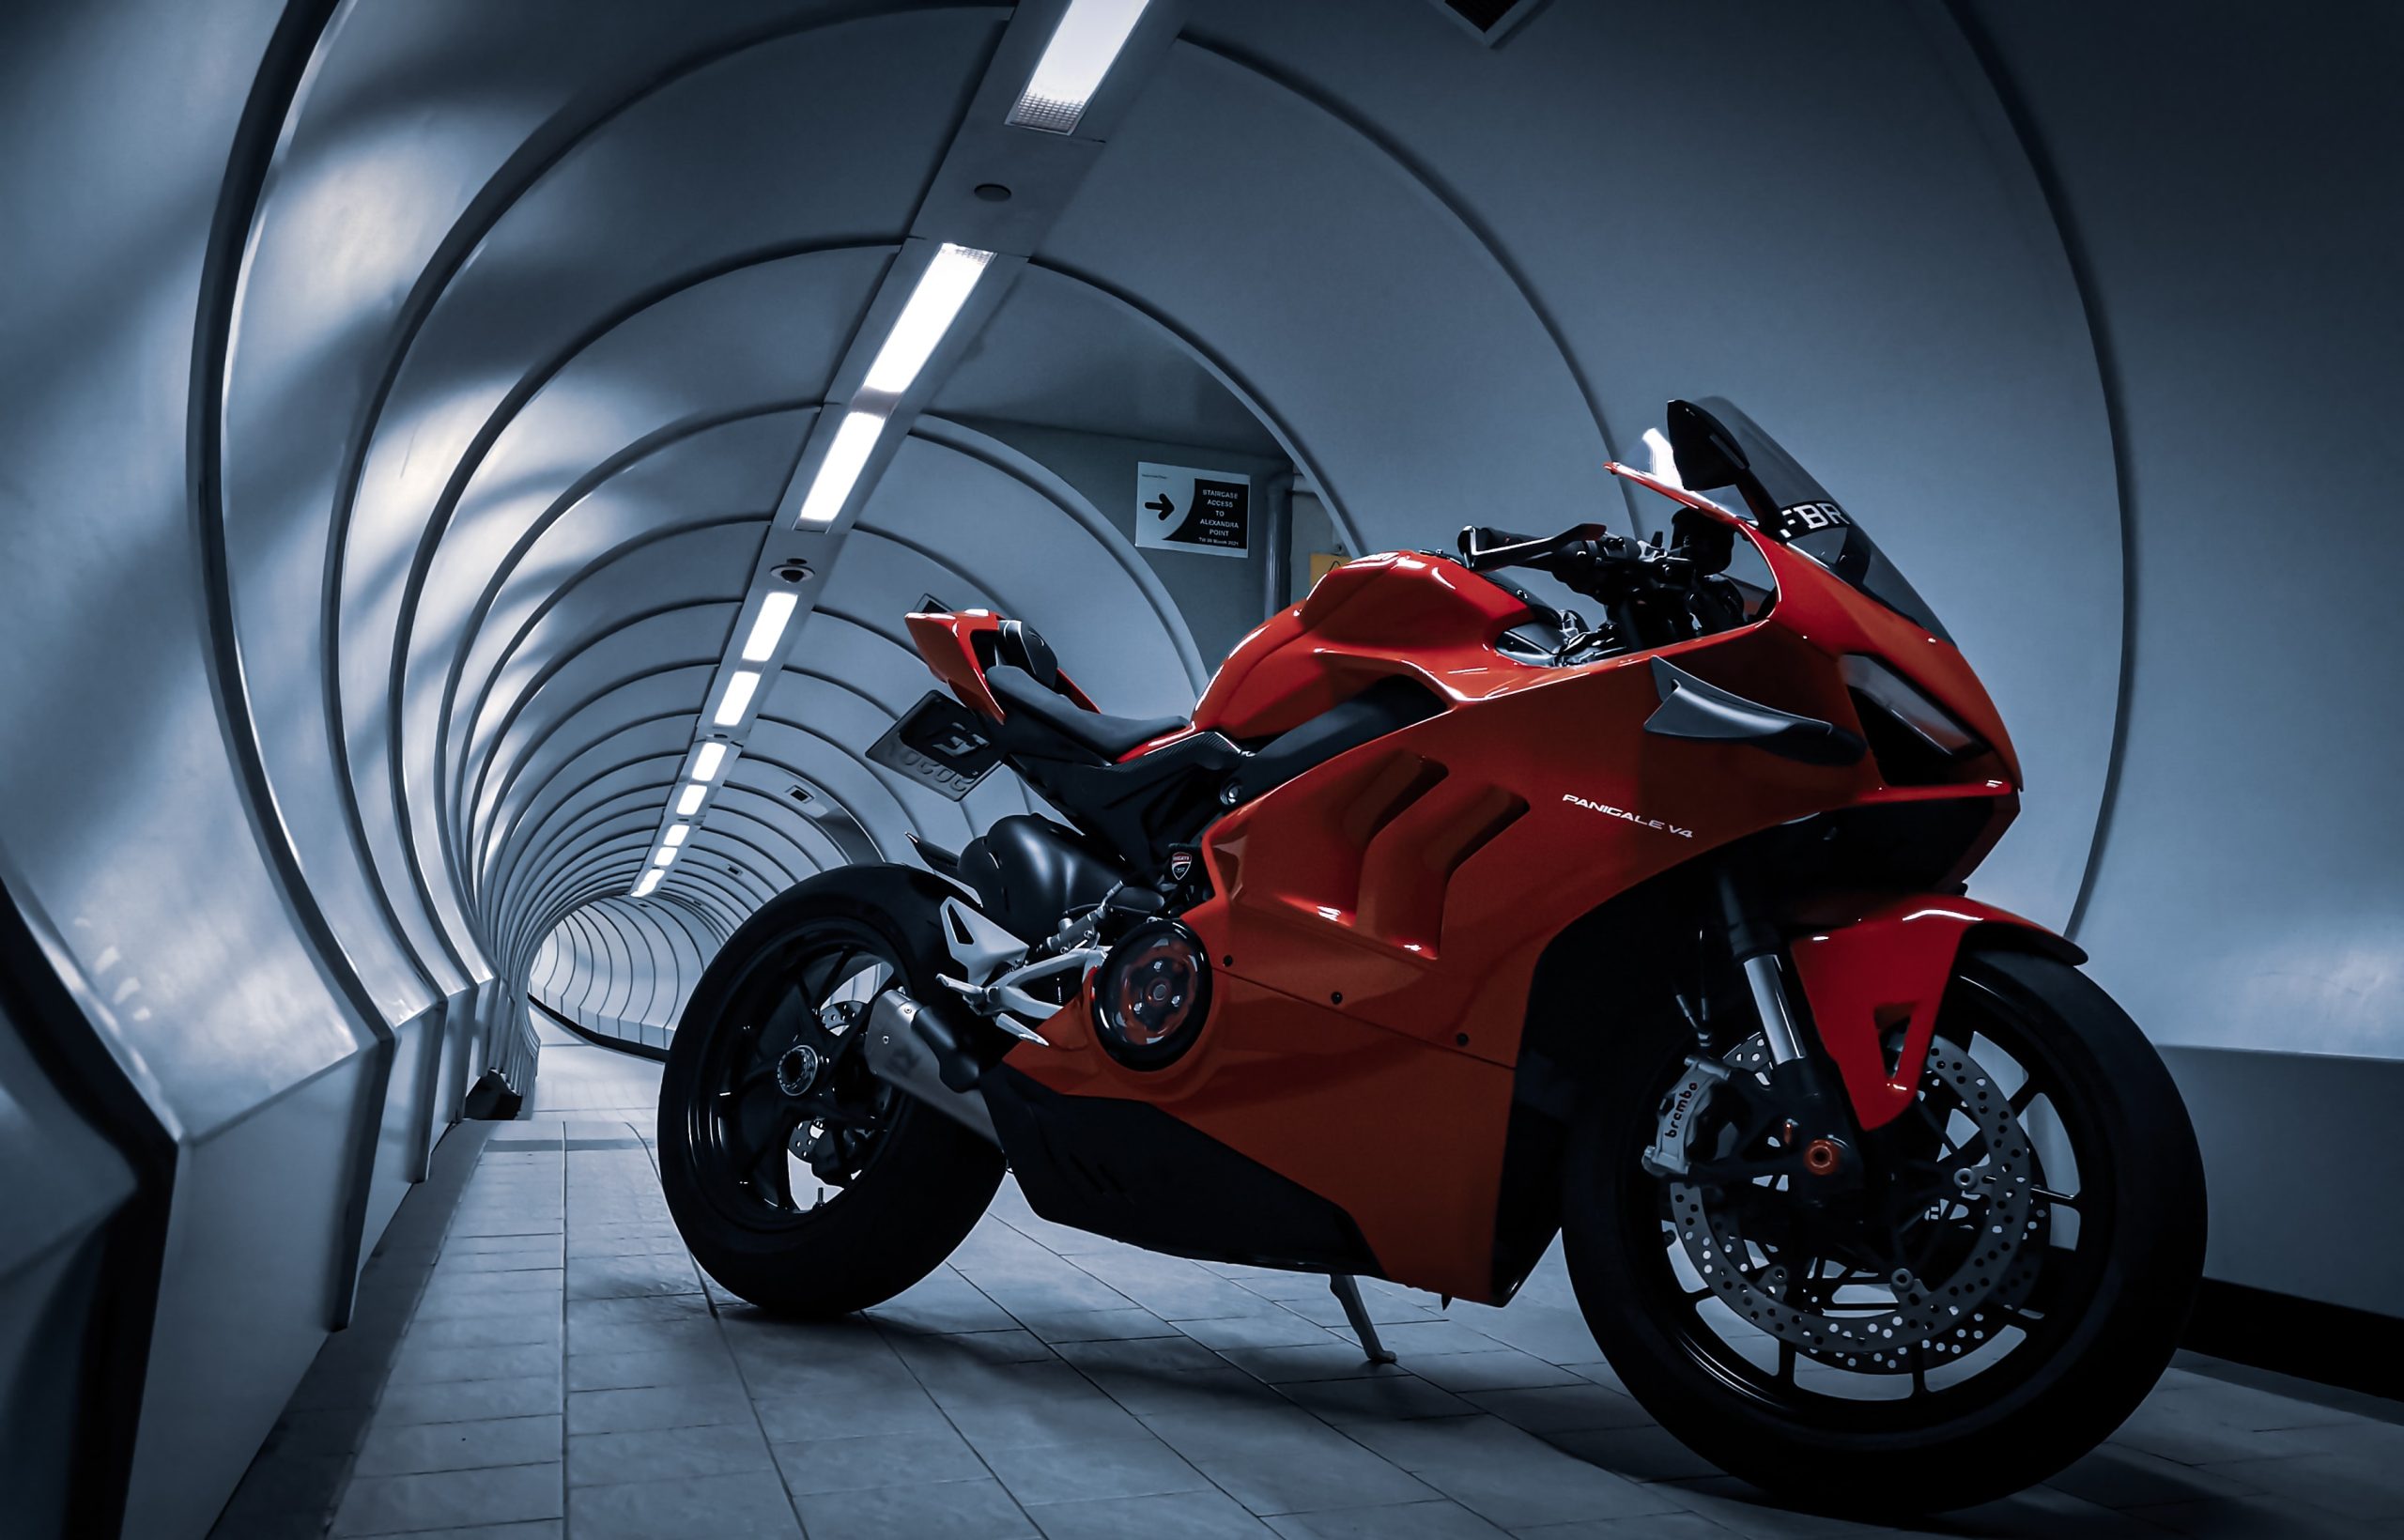 Pneus de motocicleta, as características a serem avaliadas para escolher o  melhor modelo - italiani.it